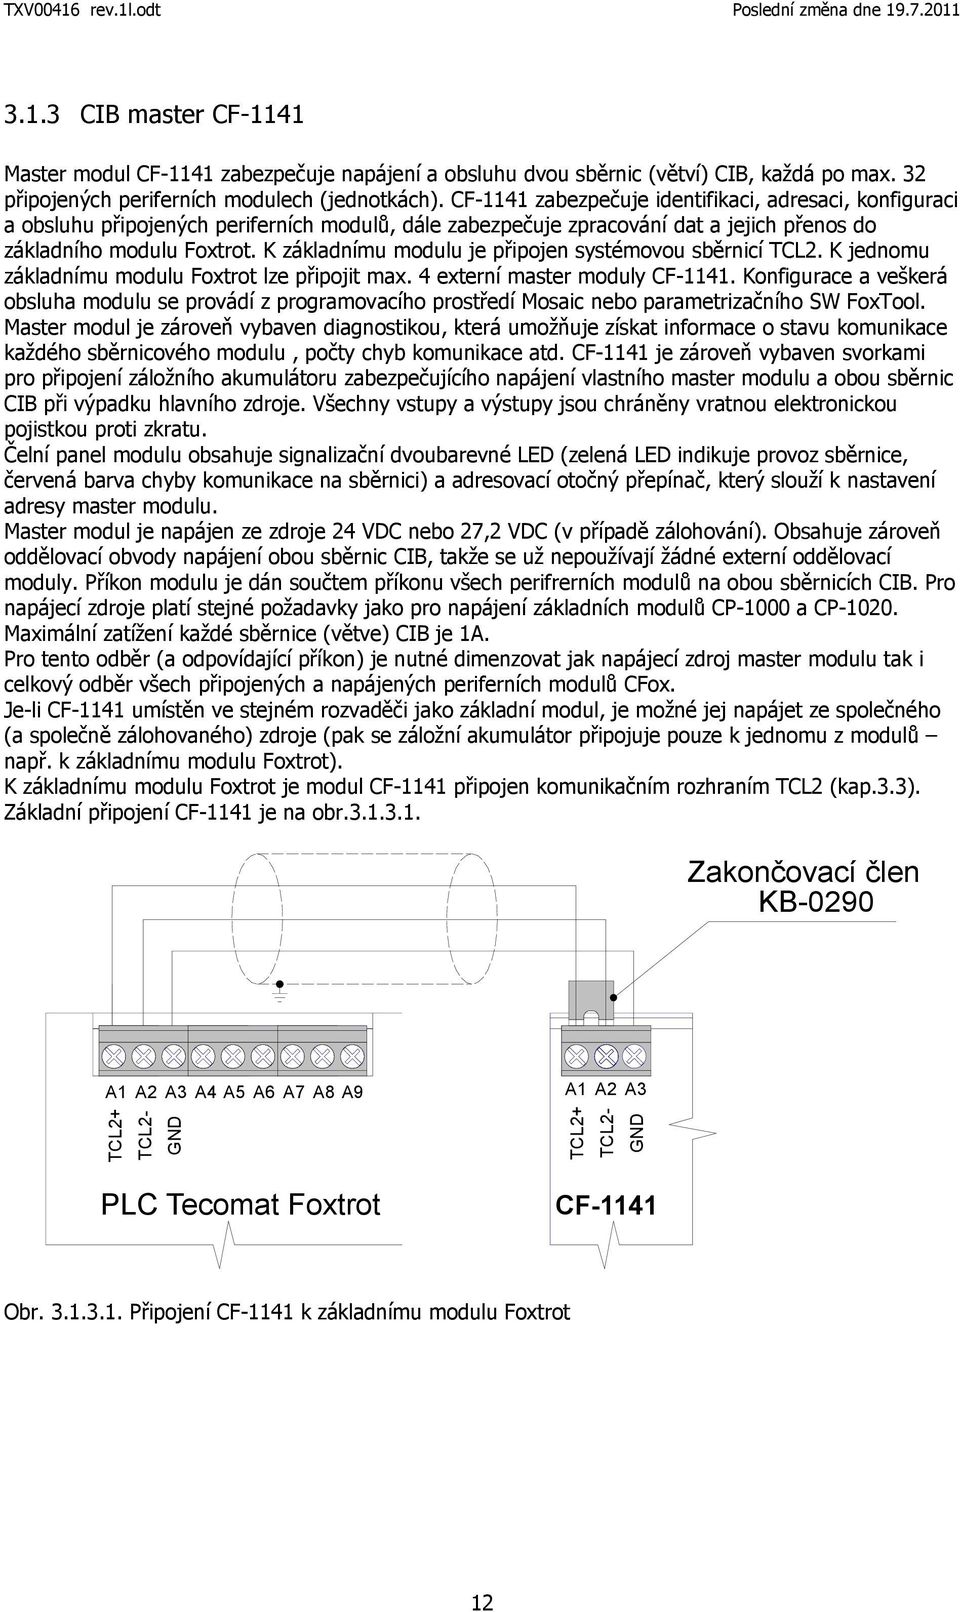 K základnímu modulu je připojen systémovou sběrnicí TCL2. K jednomu základnímu modulu Foxtrot lze připojit max. 4 externí master moduly CF-1141.